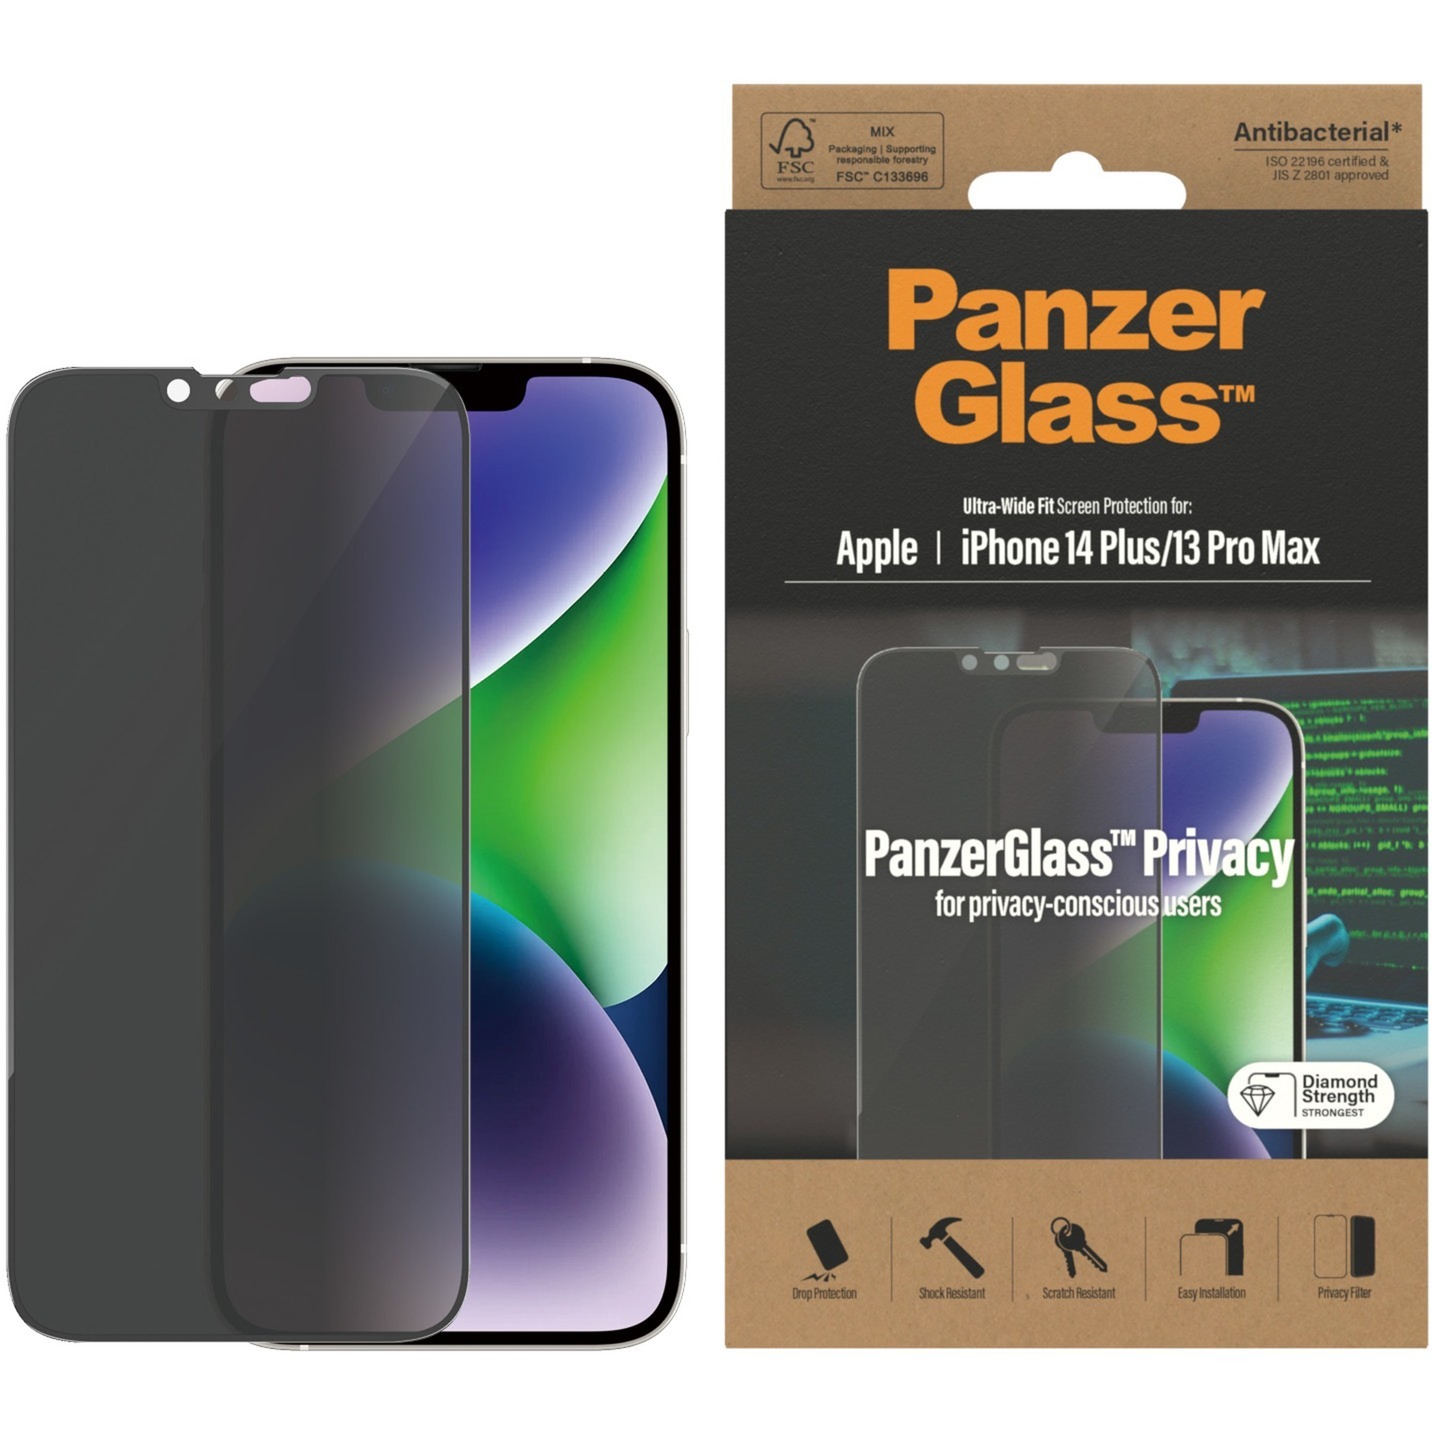 Protecteur d'Écran iPhone 11 Pro Max en Verre Trempé PanzerGlass